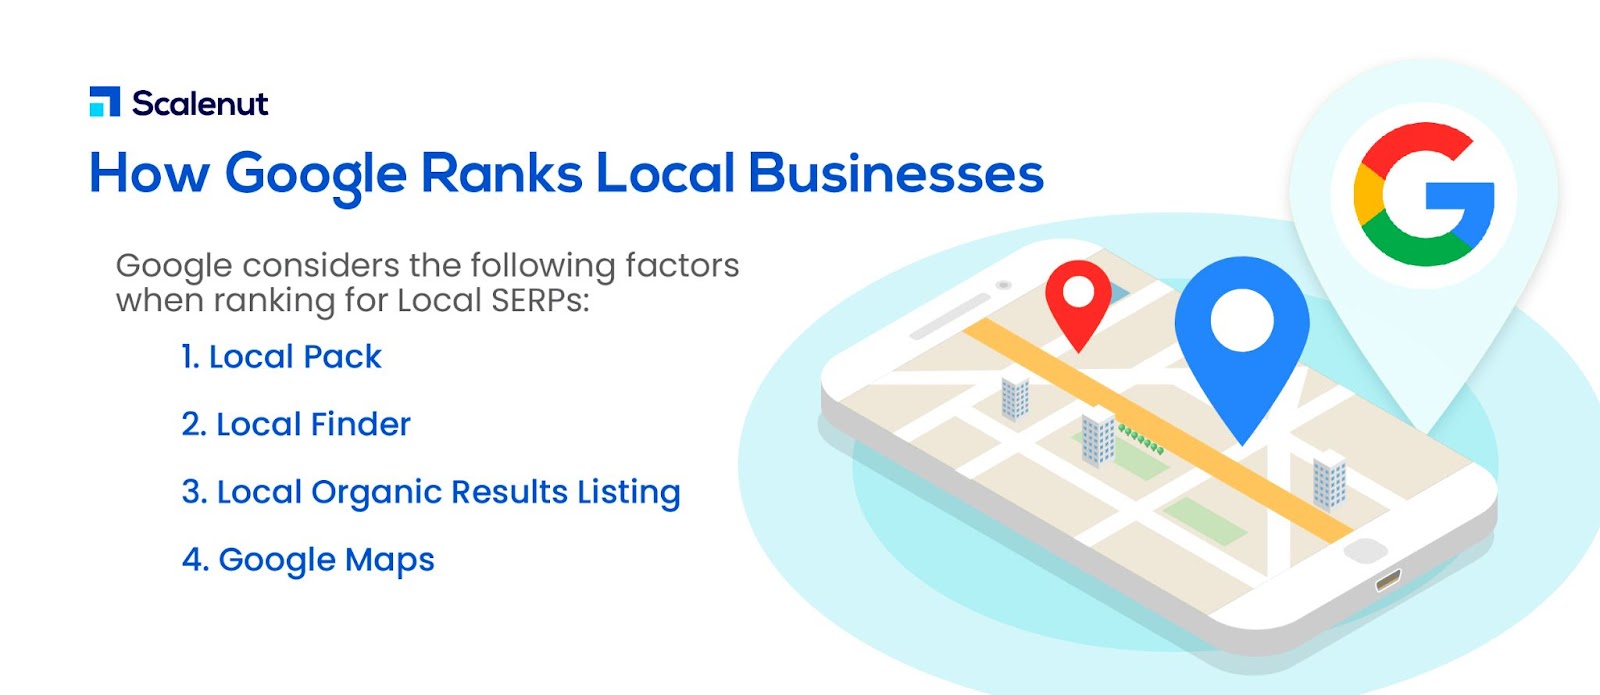 ¿Cómo clasifica Google las empresas locales?